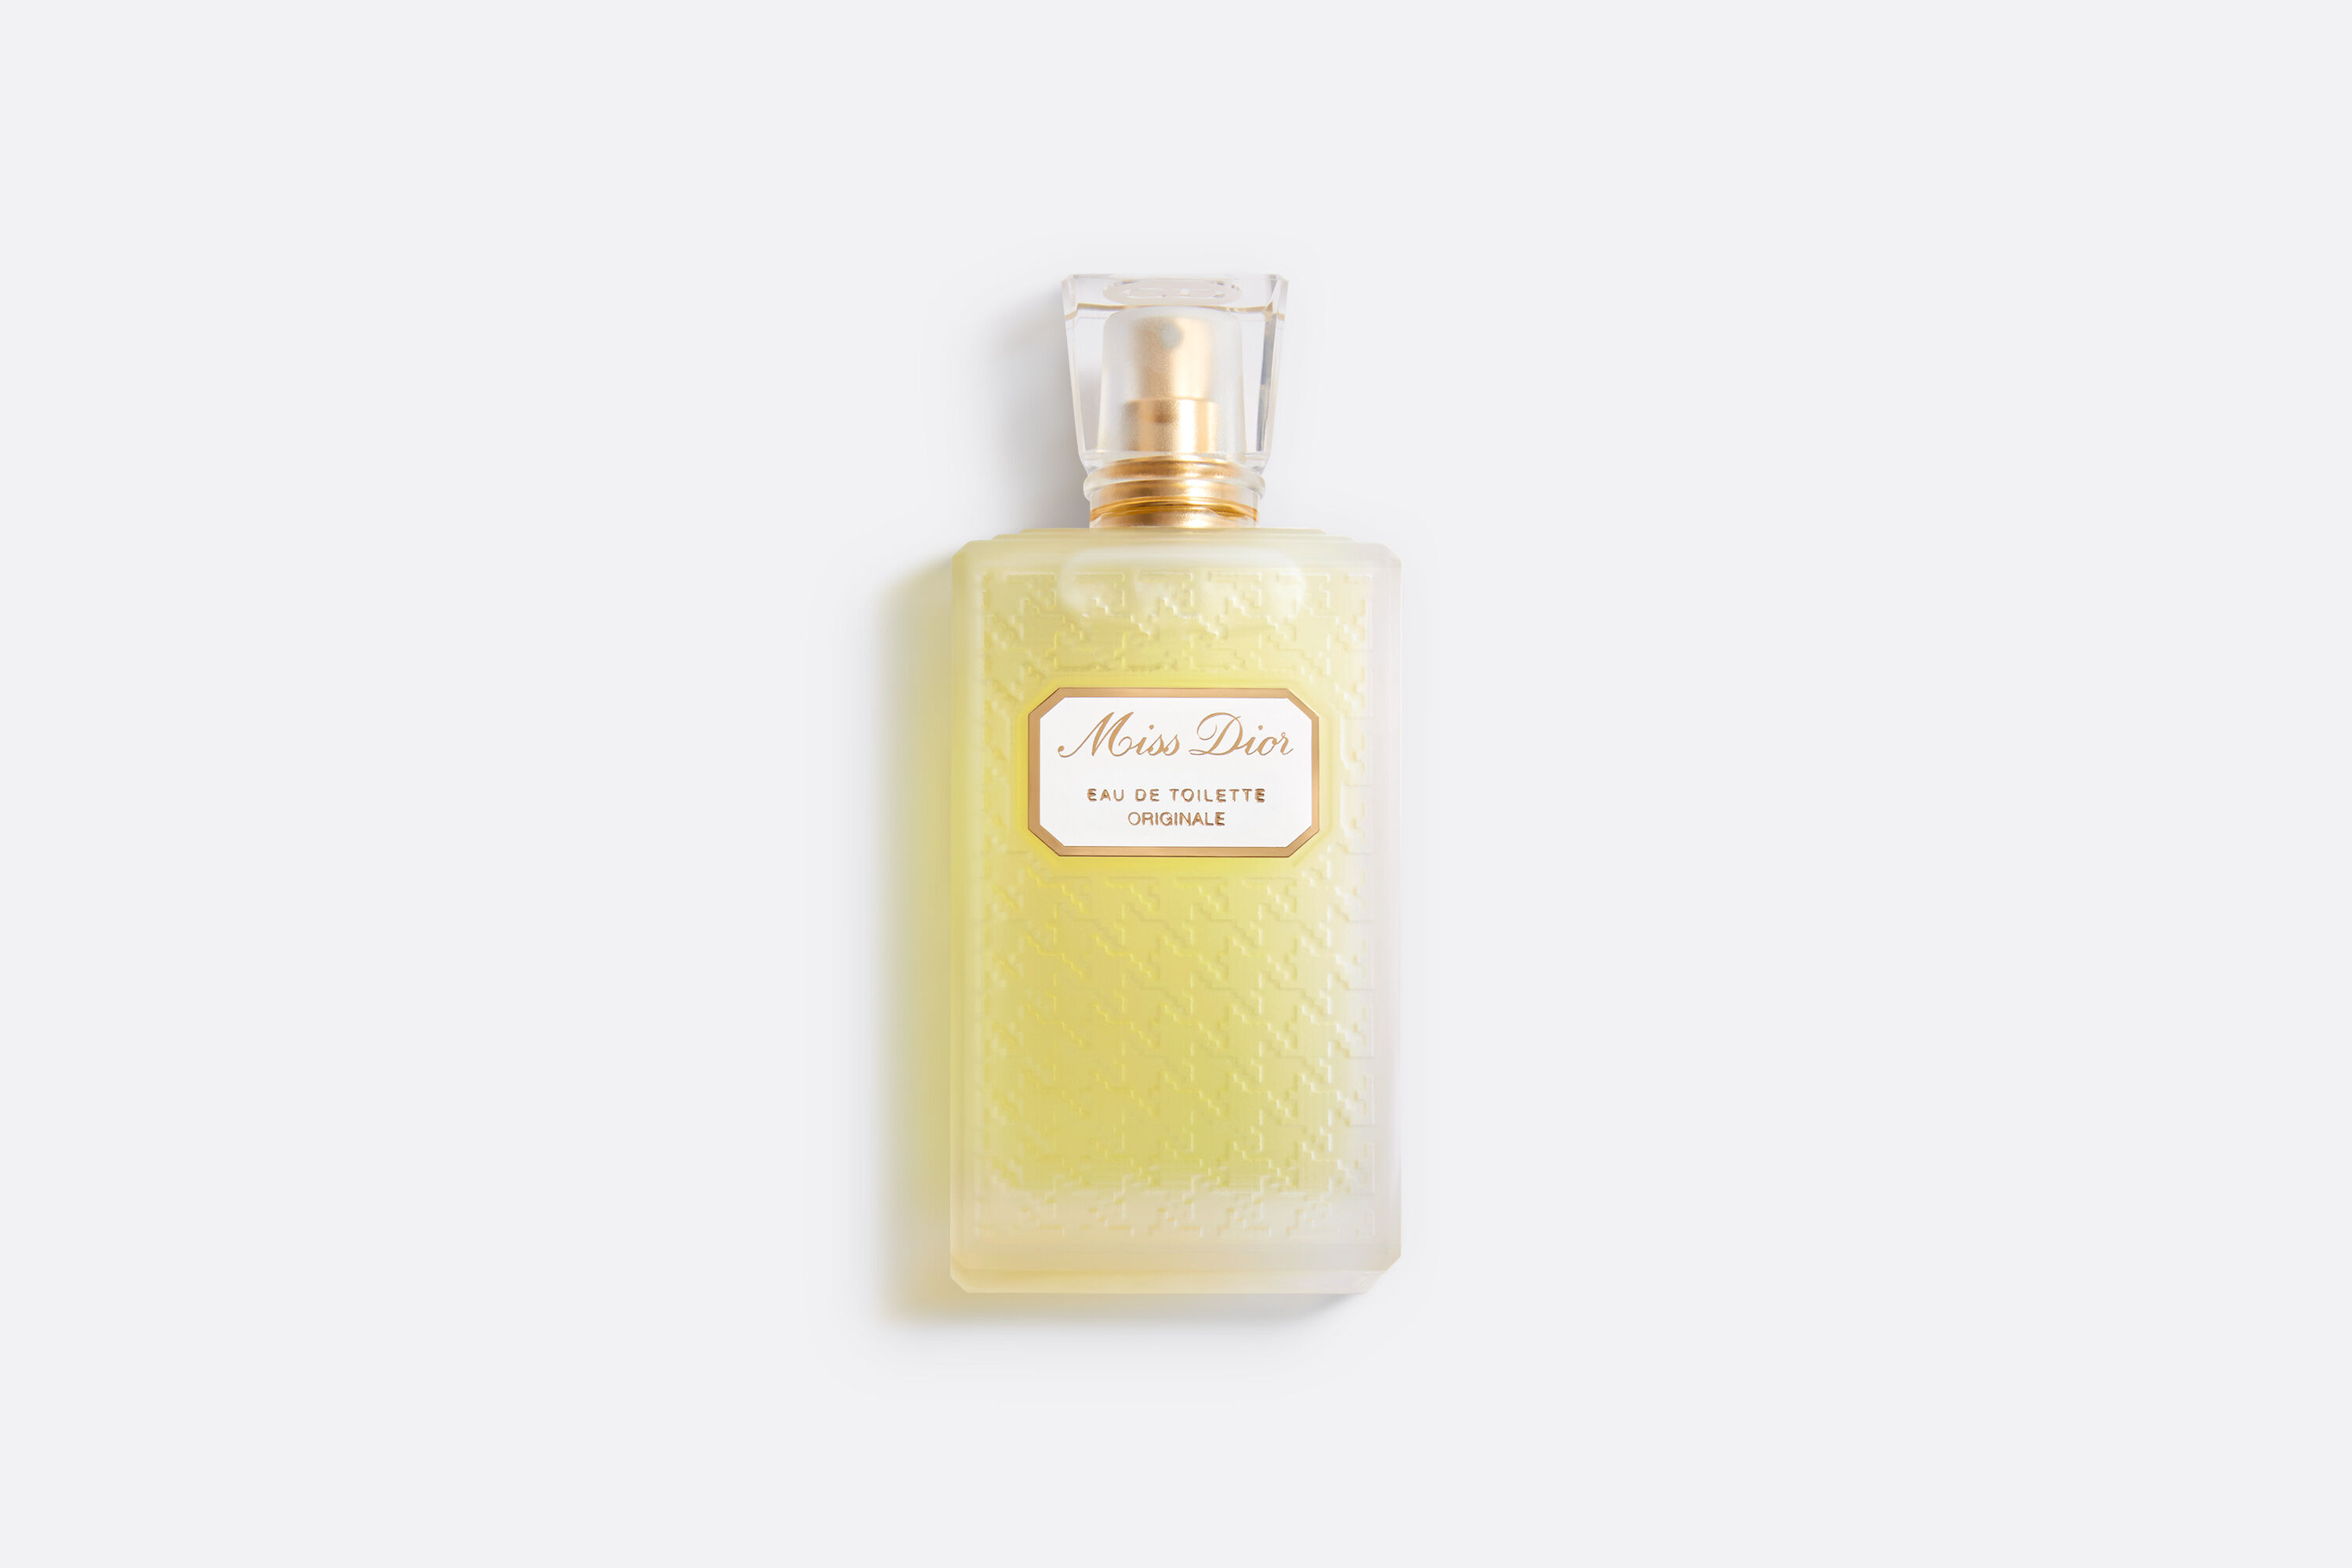 Huis Aktentas Ideaal Miss Dior Eau de toilette originale - Women's Fragrance - Men's Fragrance |  DIOR